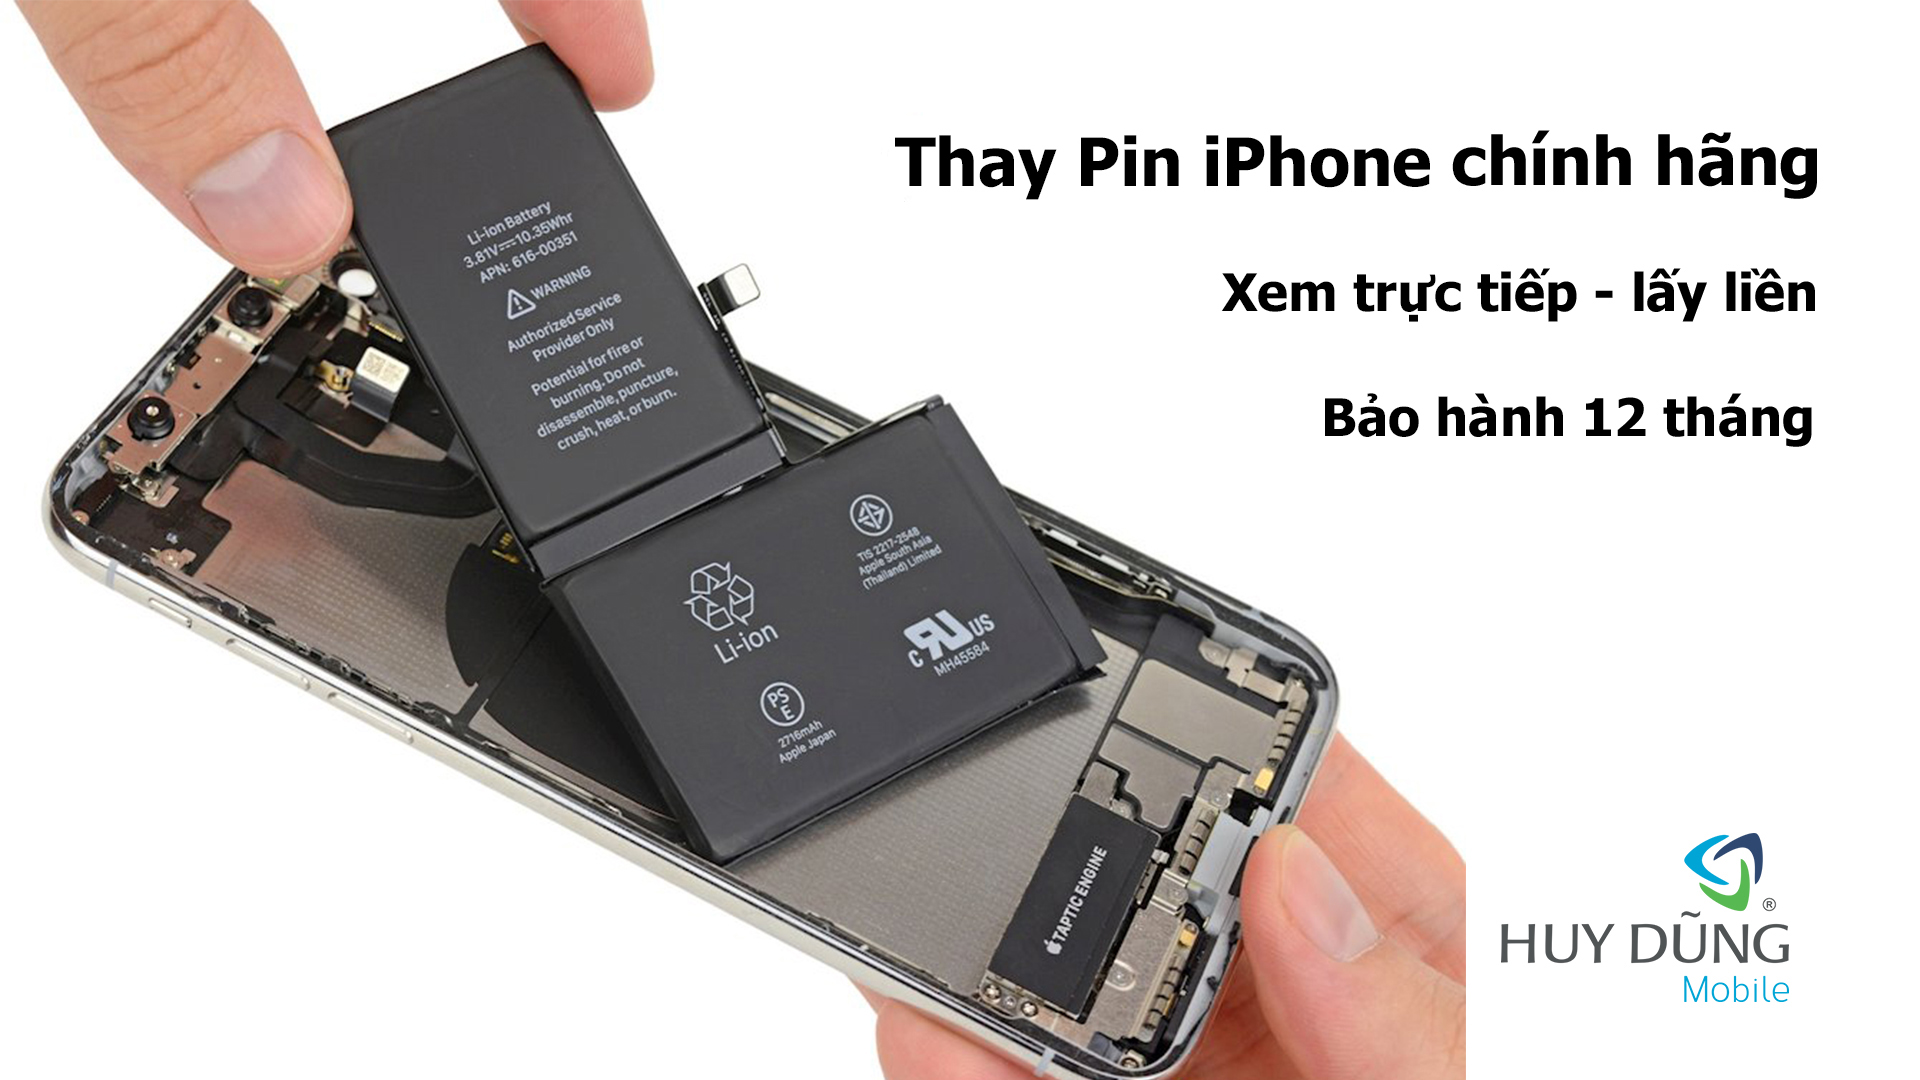 Bảng giá thay pin iPhone quận Bình Tân